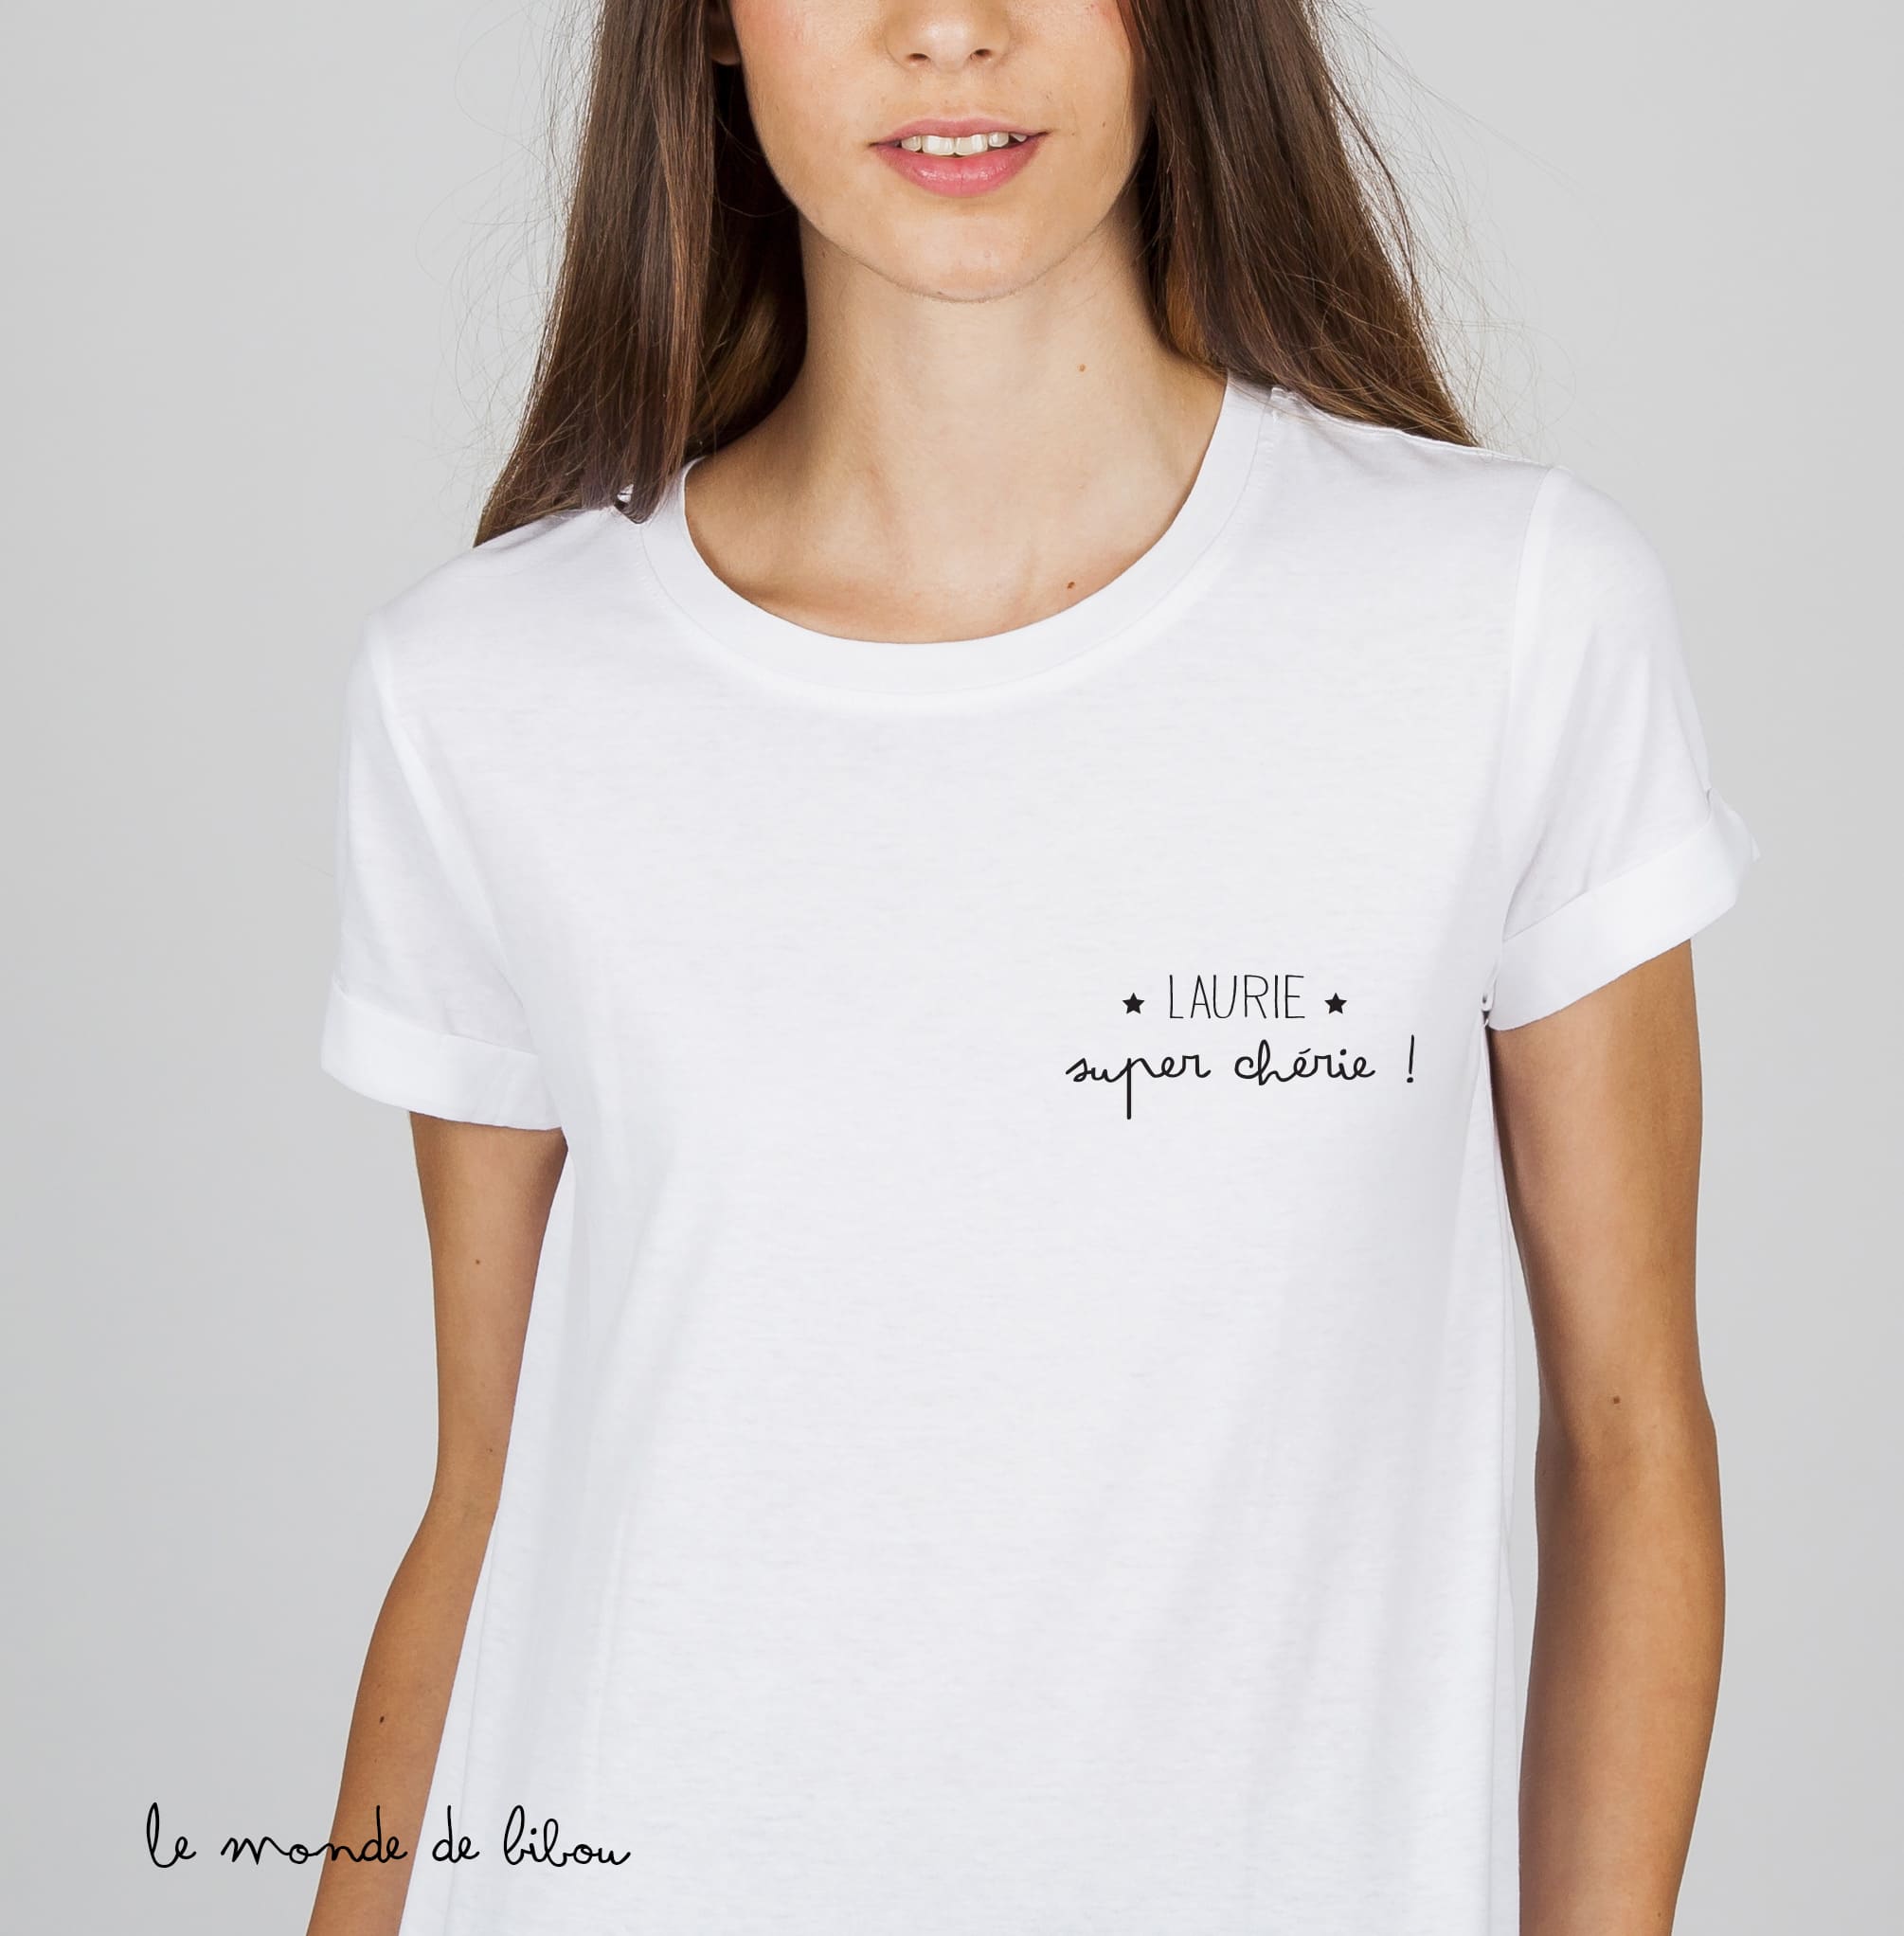 Tee Shirt à Personnaliser - T-Shirt femme personnalisé